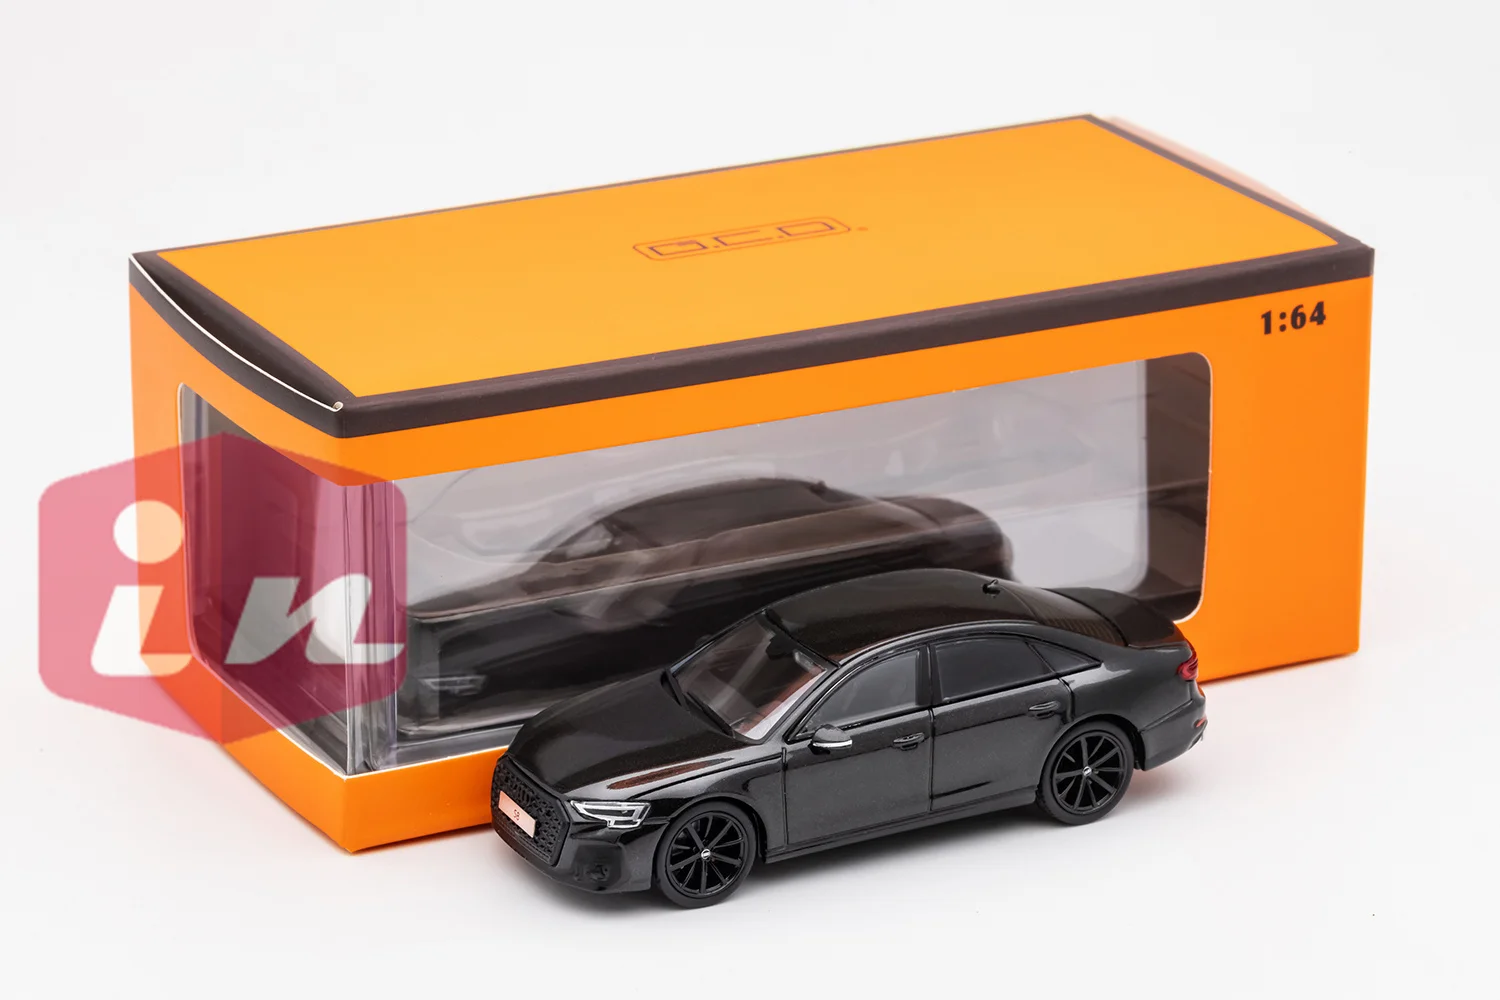 GCD 1/64 S8 Черная литая под давлением коллекция моделей автомобилей, ограниченная серия игрушечных автомобилей для хобби